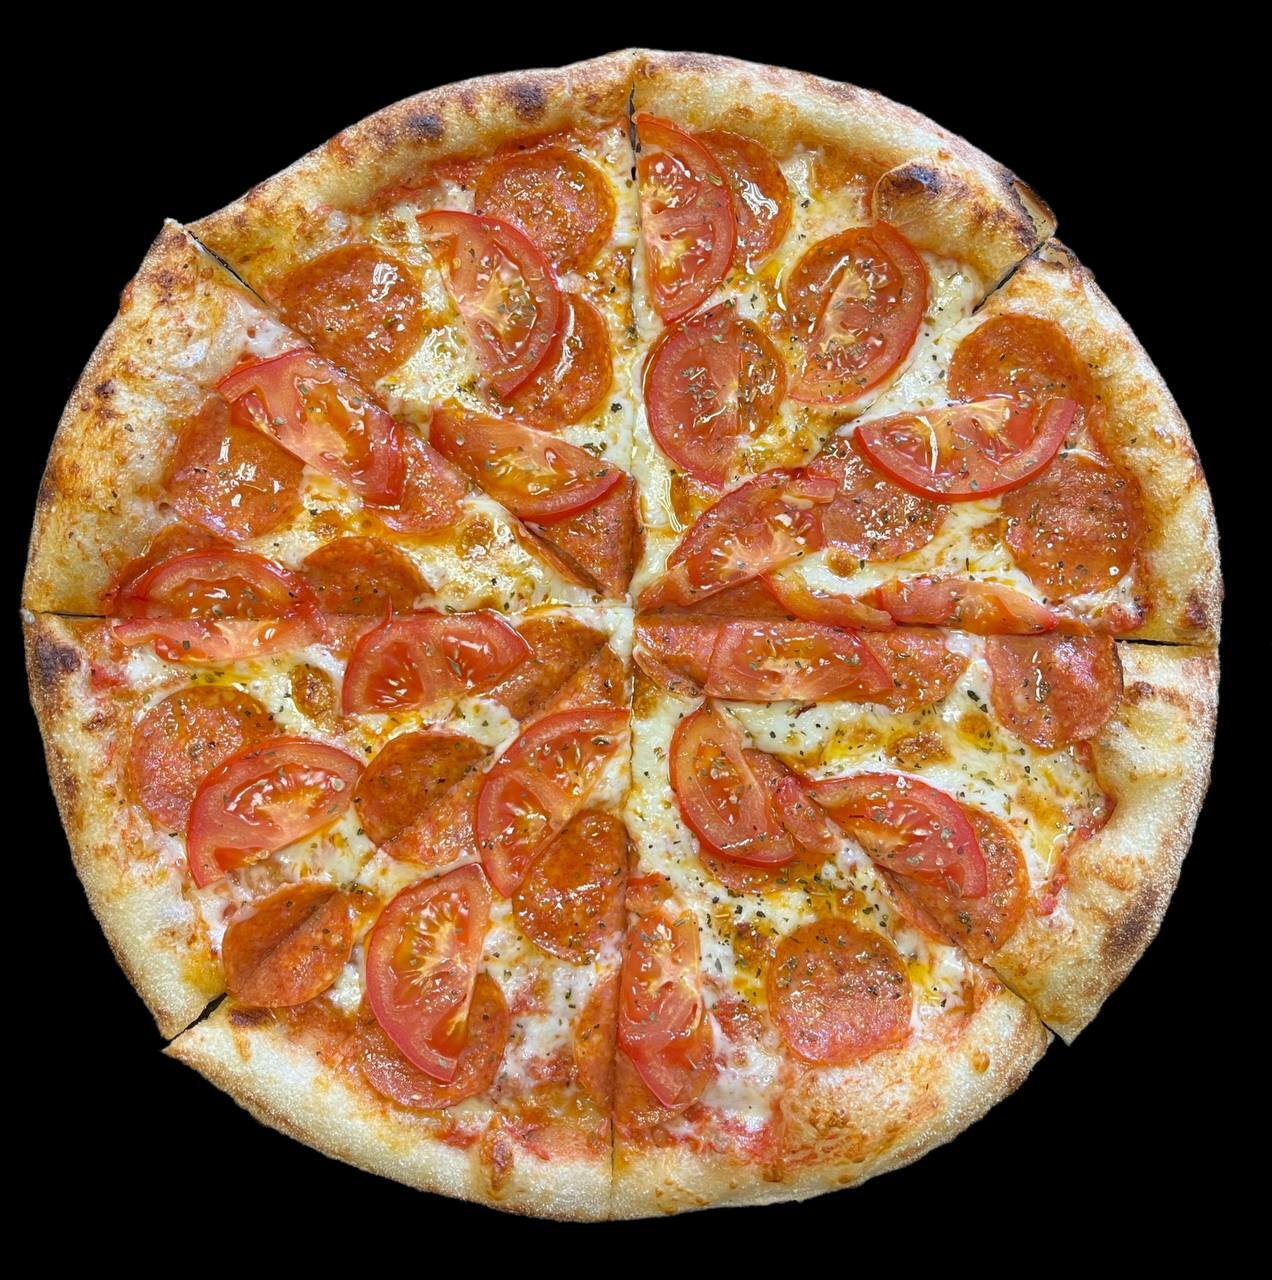 сколько примерно стоит пицца пепперони фото 20